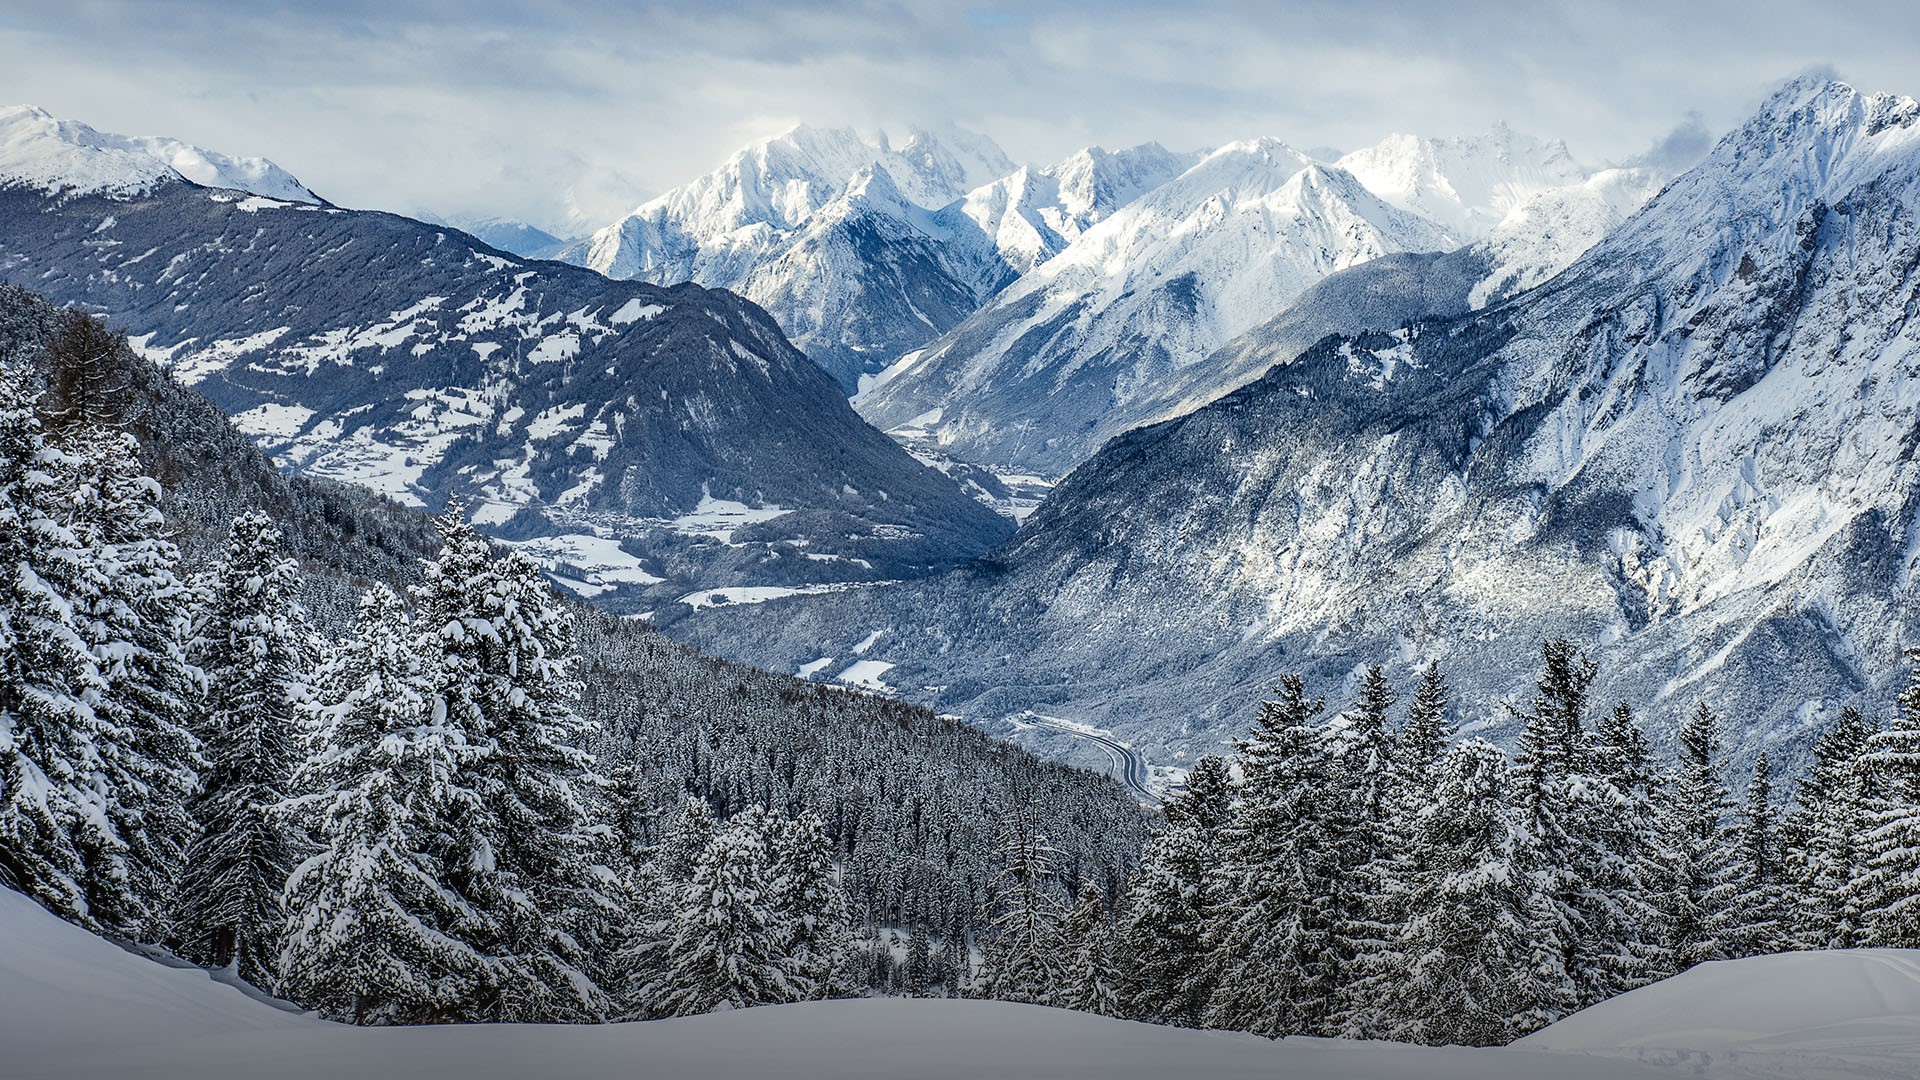 Snowy mountain peaks of Tyrolean Alps in distance | Windows Spotlight ...